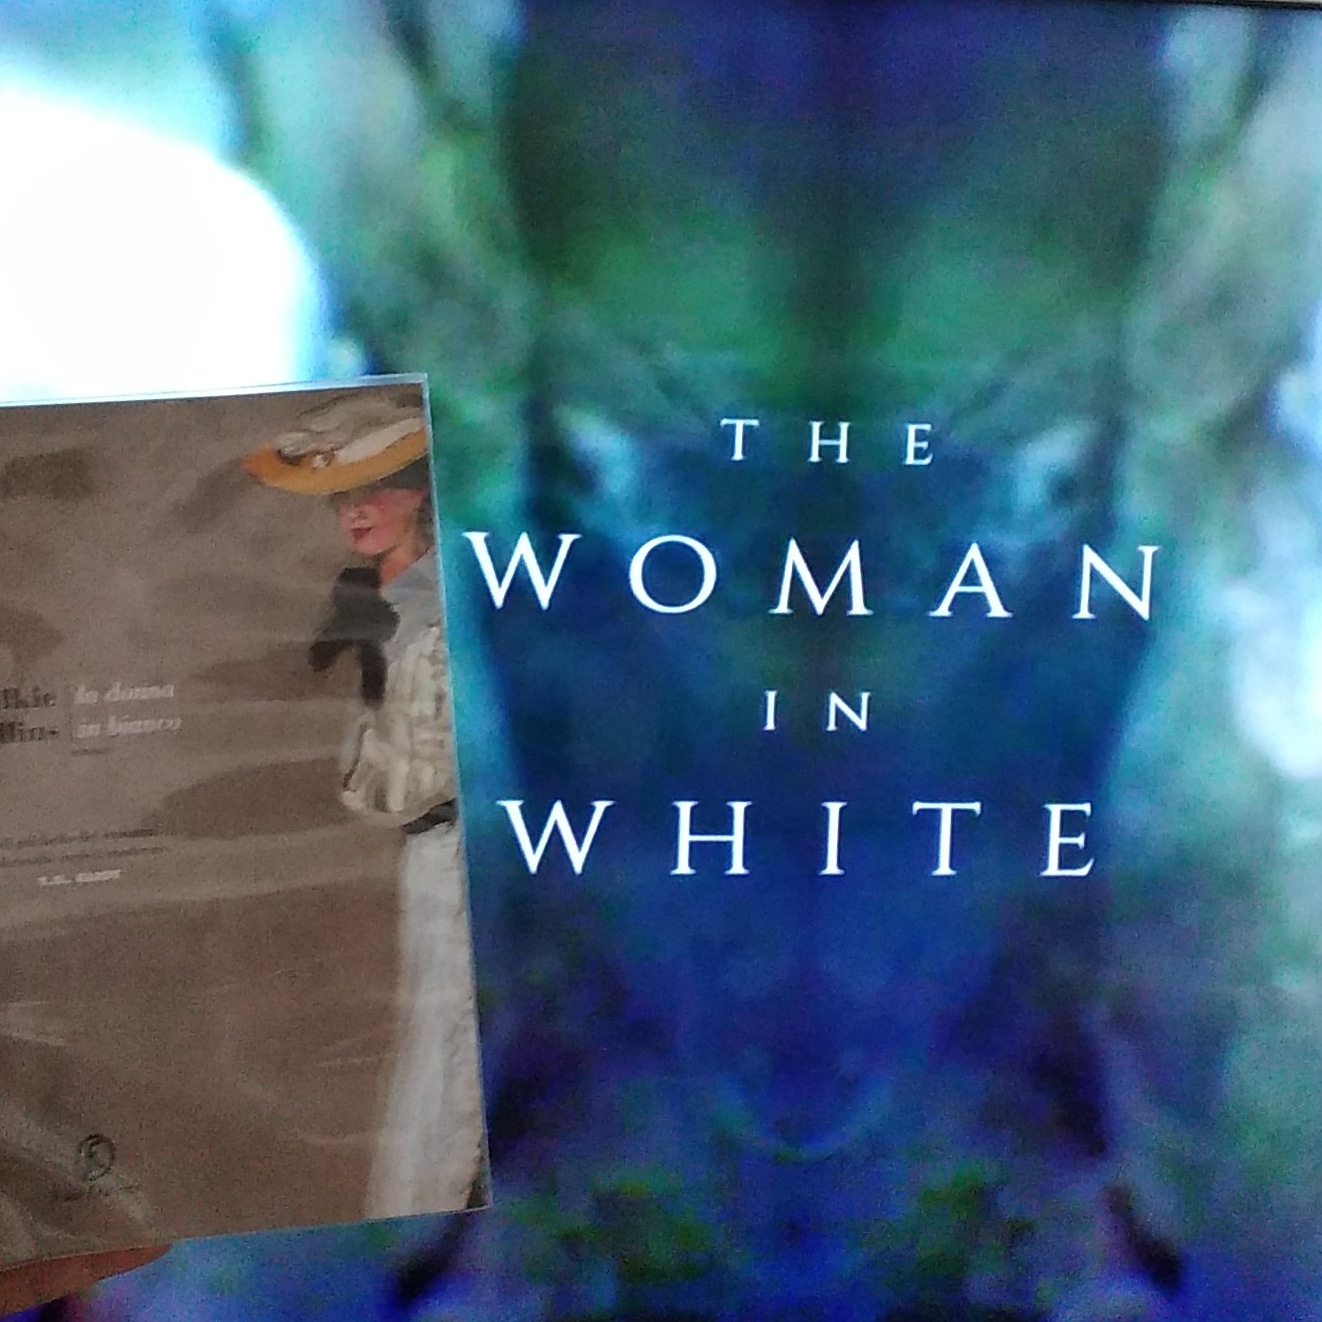 The Woman in White (La donna in bianco)